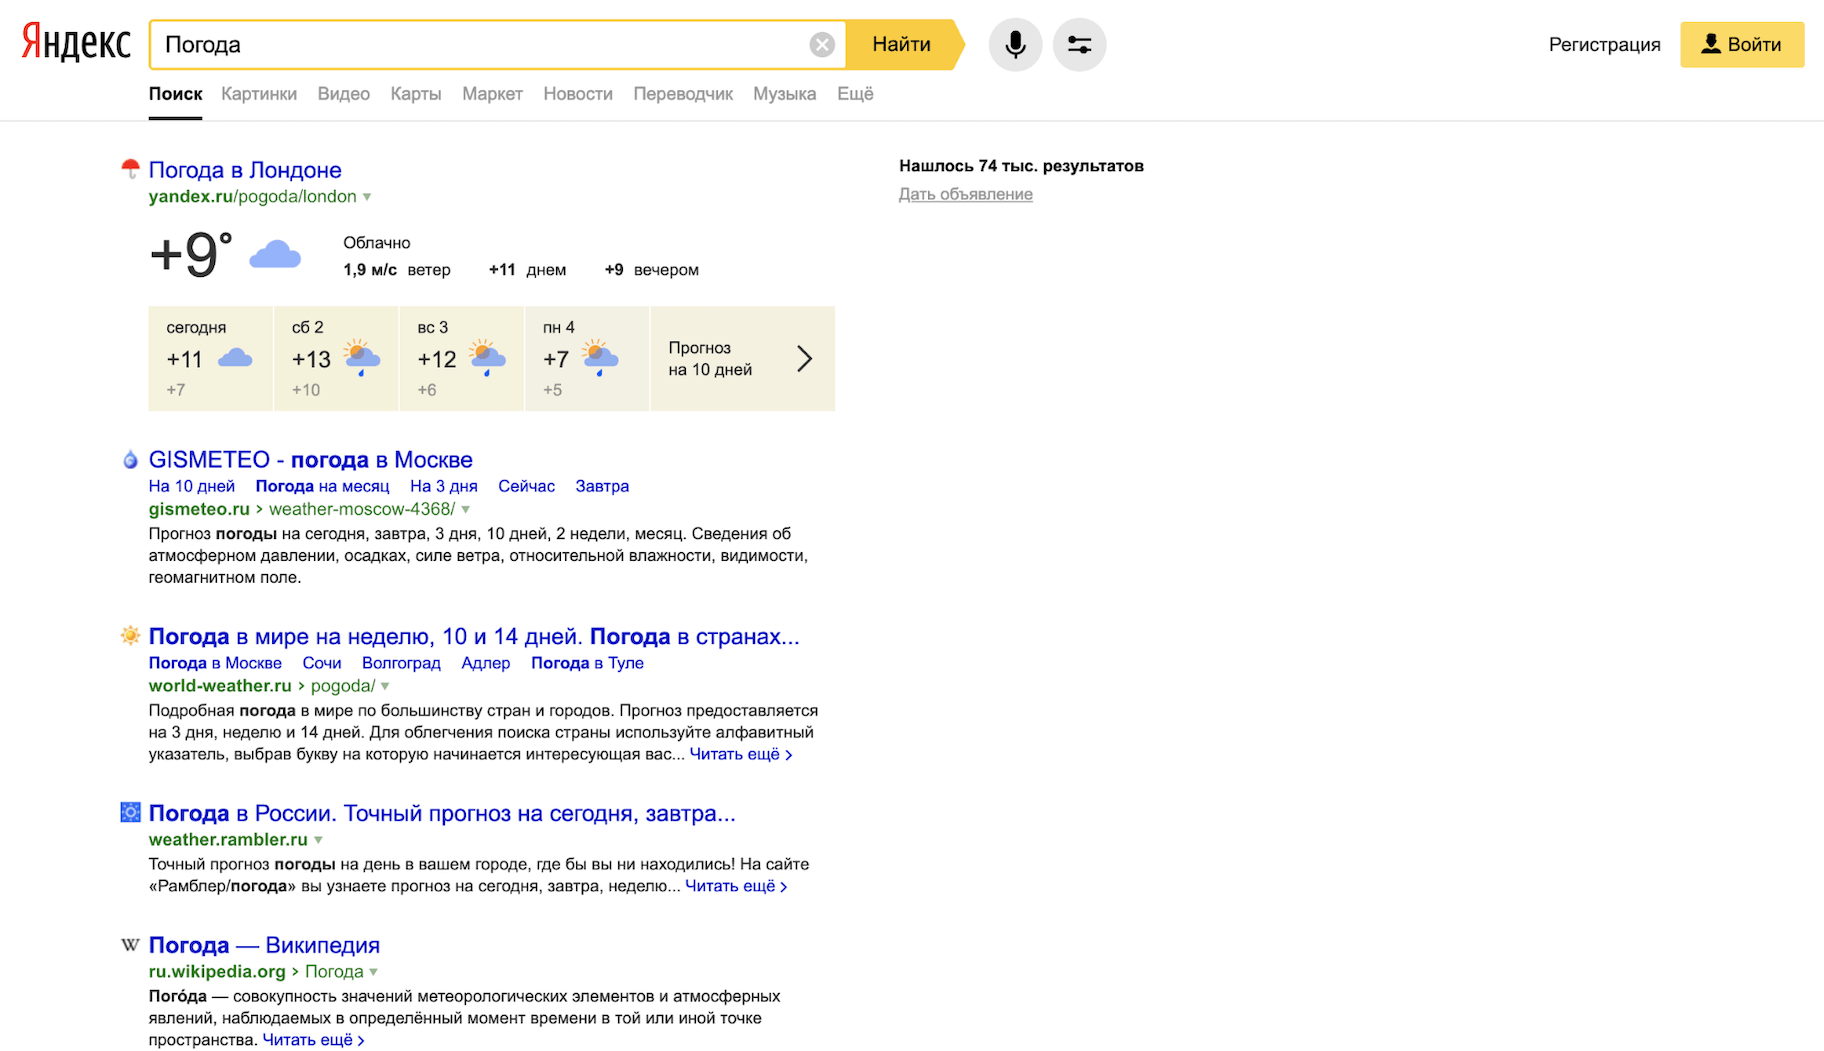 Resultados del motor de búsqueda de Yandex